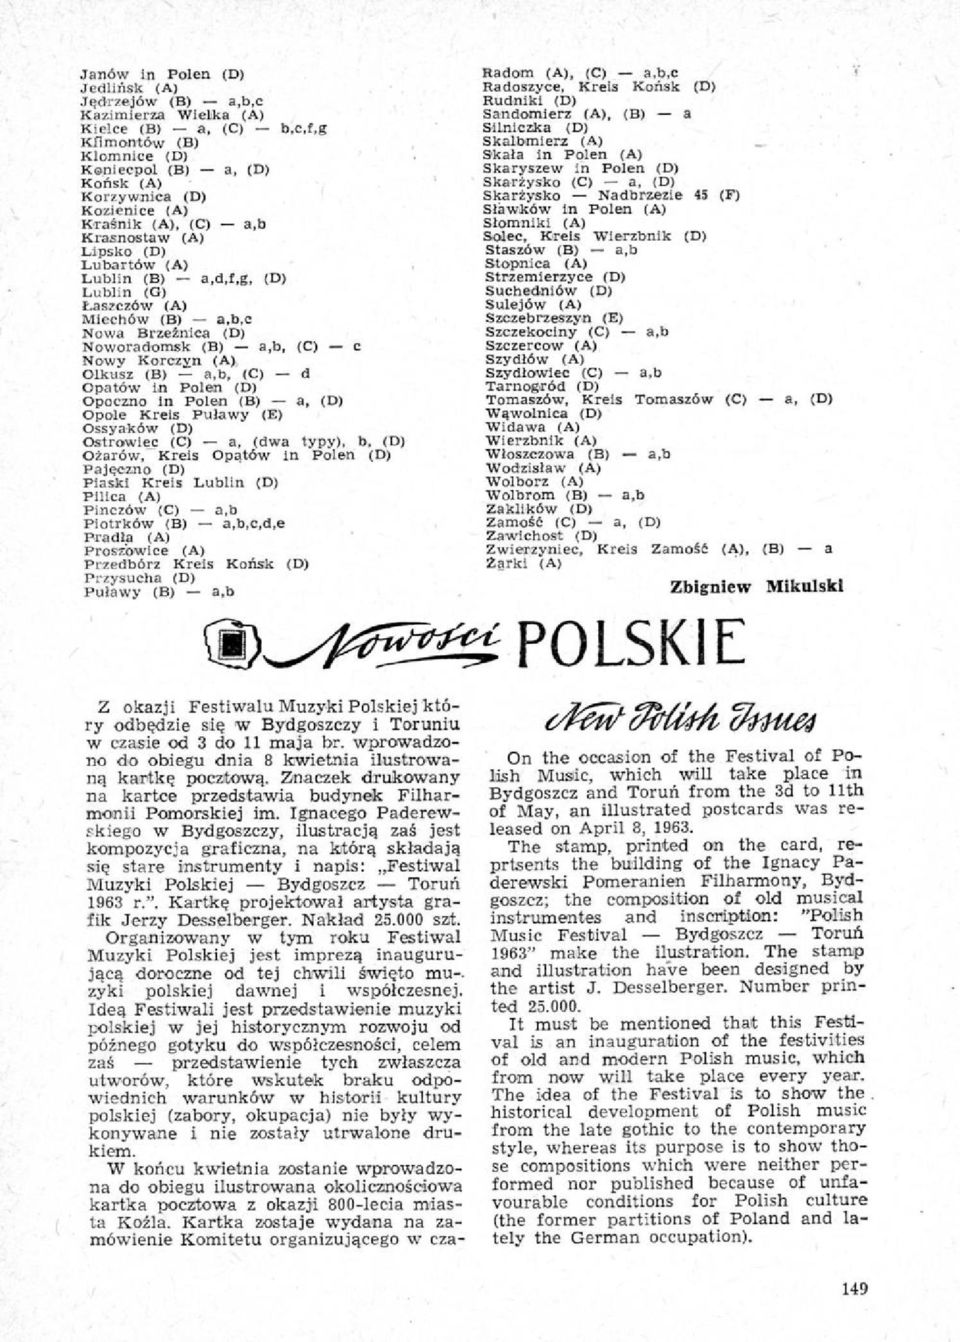 (C) d Opatów in Polen (D) Opoczno in Polon (B) a, (D) Opole Kreis Puławy (E) Ossyaków (D) Ostrowiec (C) a, (dwa typy), b, (D) Ożarów,Kreis Opatów In Polan (D) Pajęczno (D) Piaski Kreis Lublin (D)